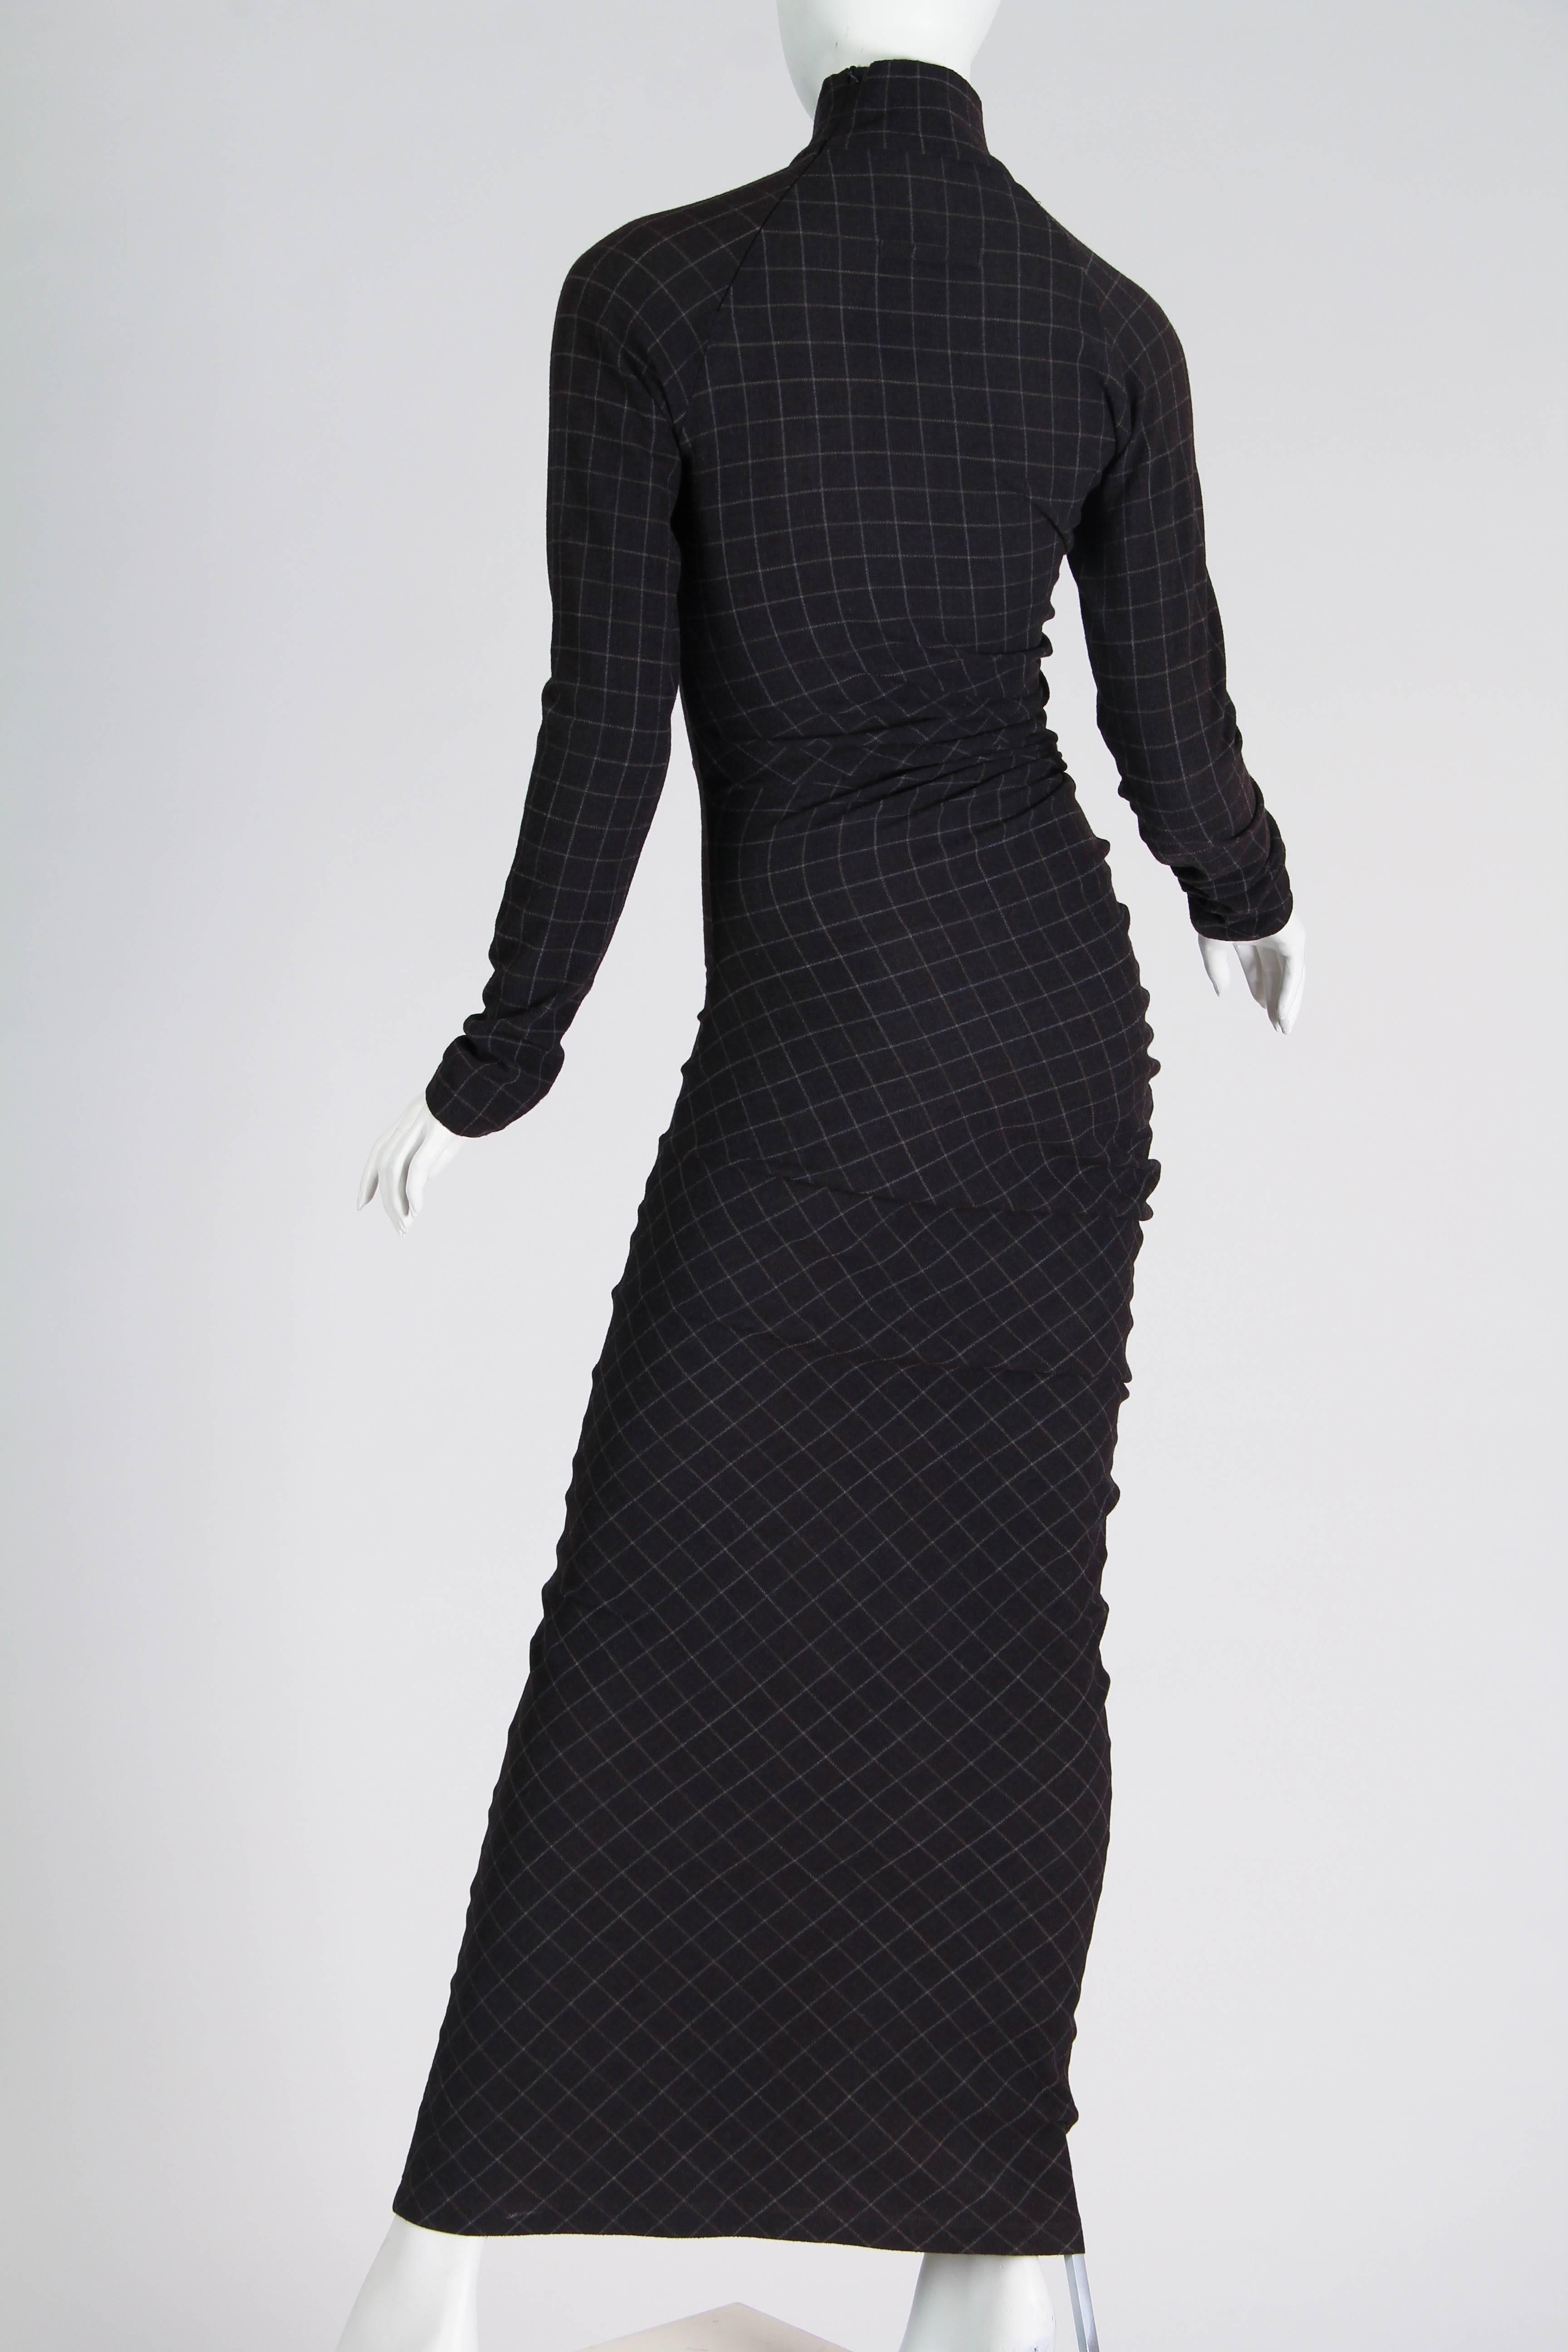 Jean Paul Gaultier Spiral Cut Dress 1